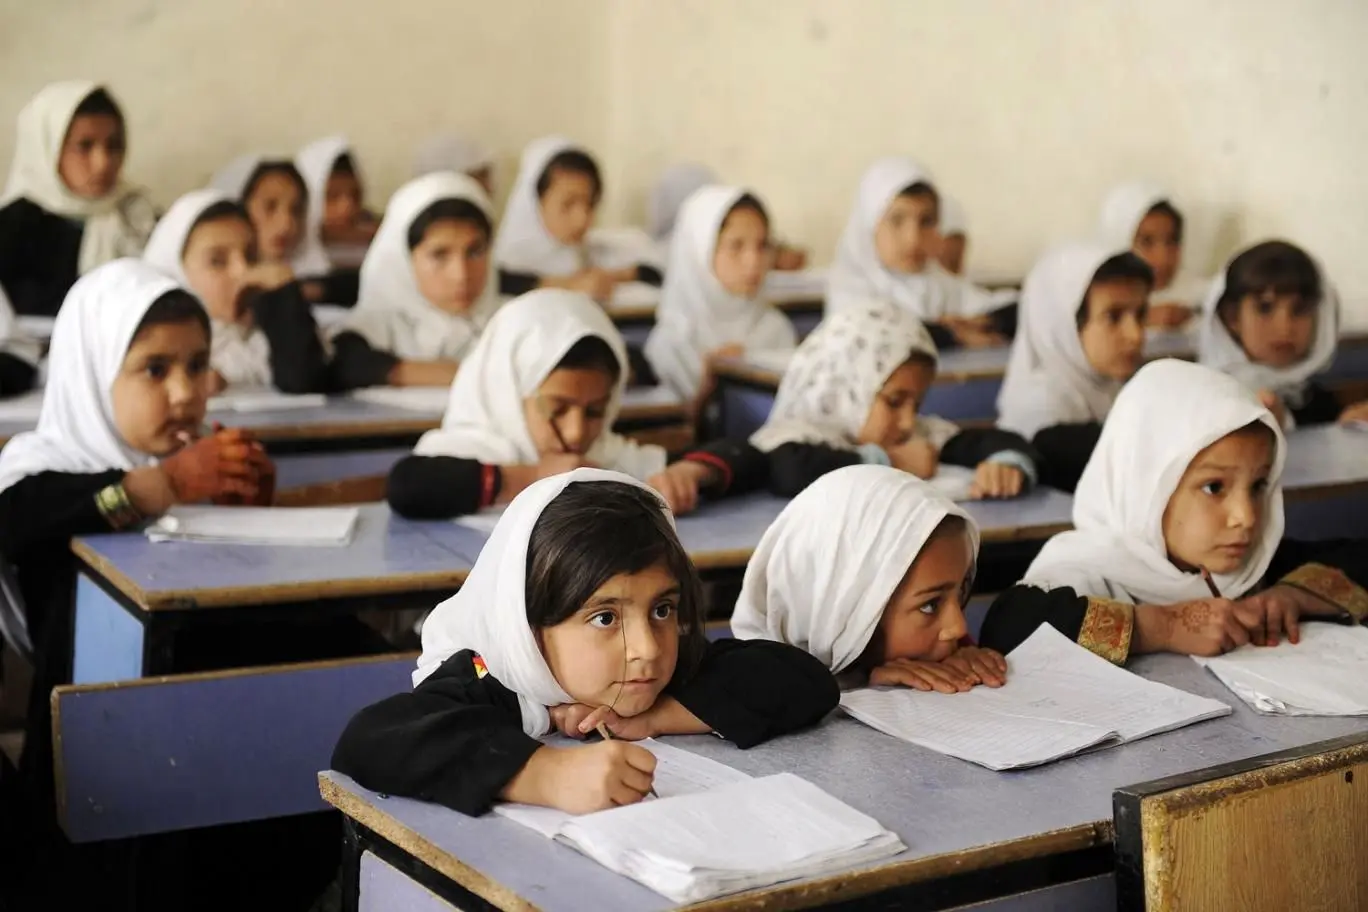 آموزش مختلط در افغانستان ممنوع شد